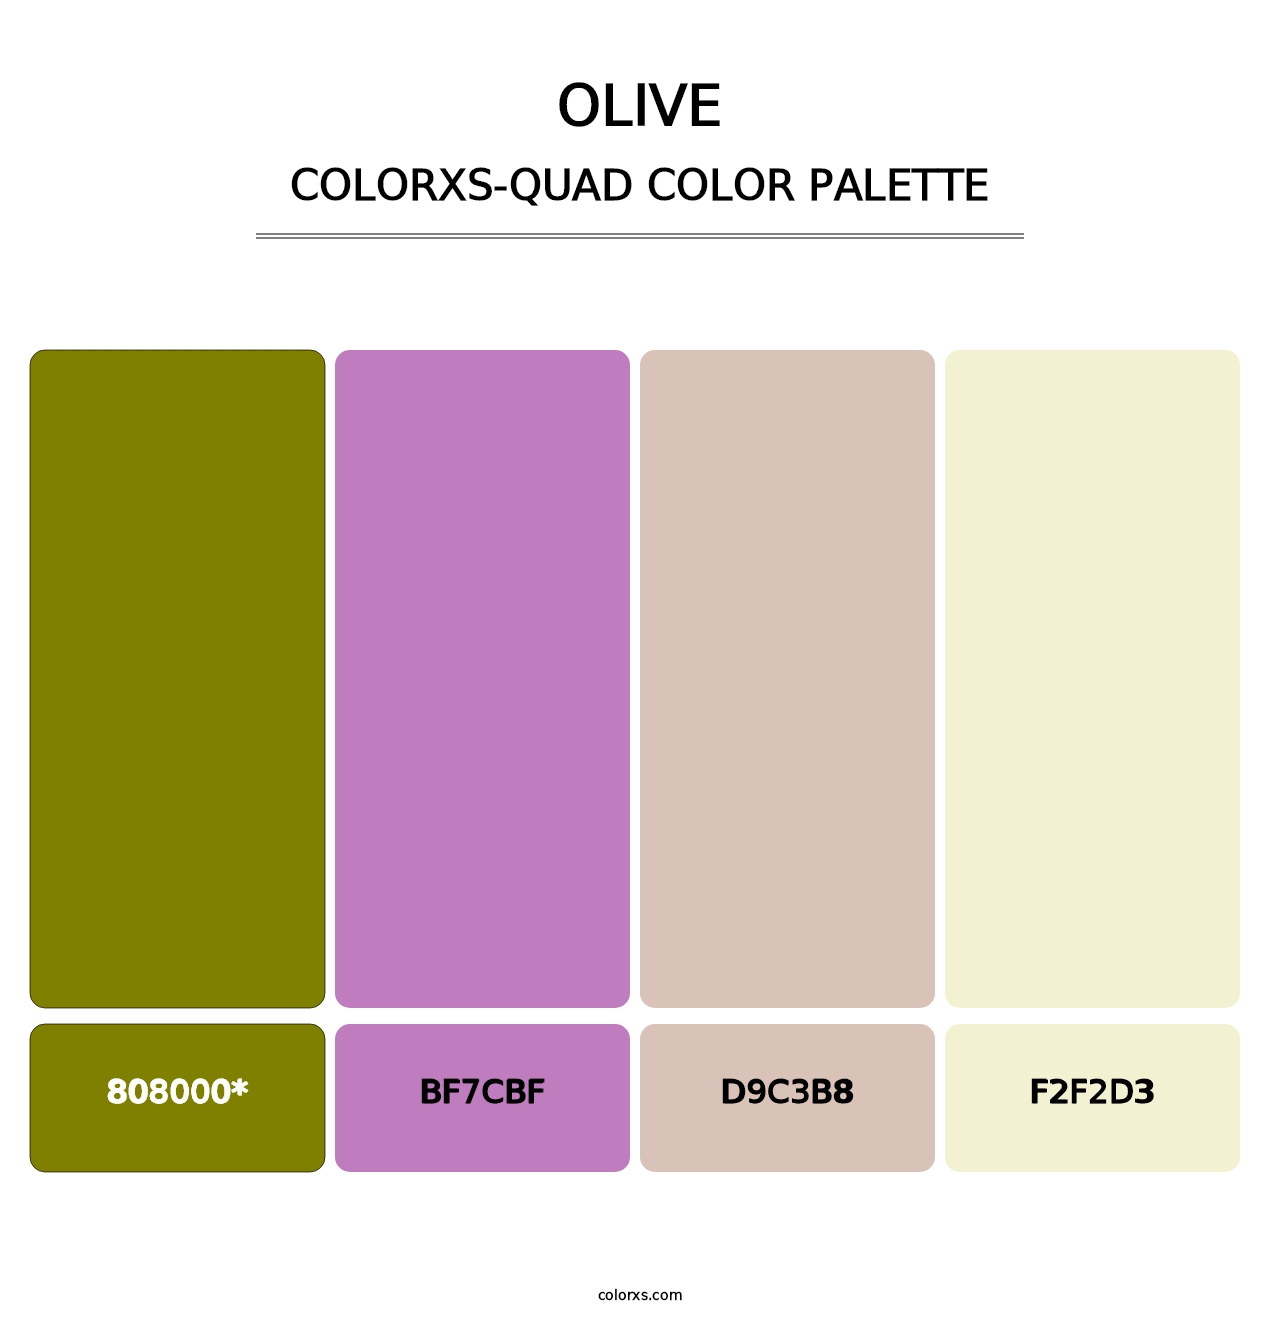 Olive - Colorxs Quad Palette